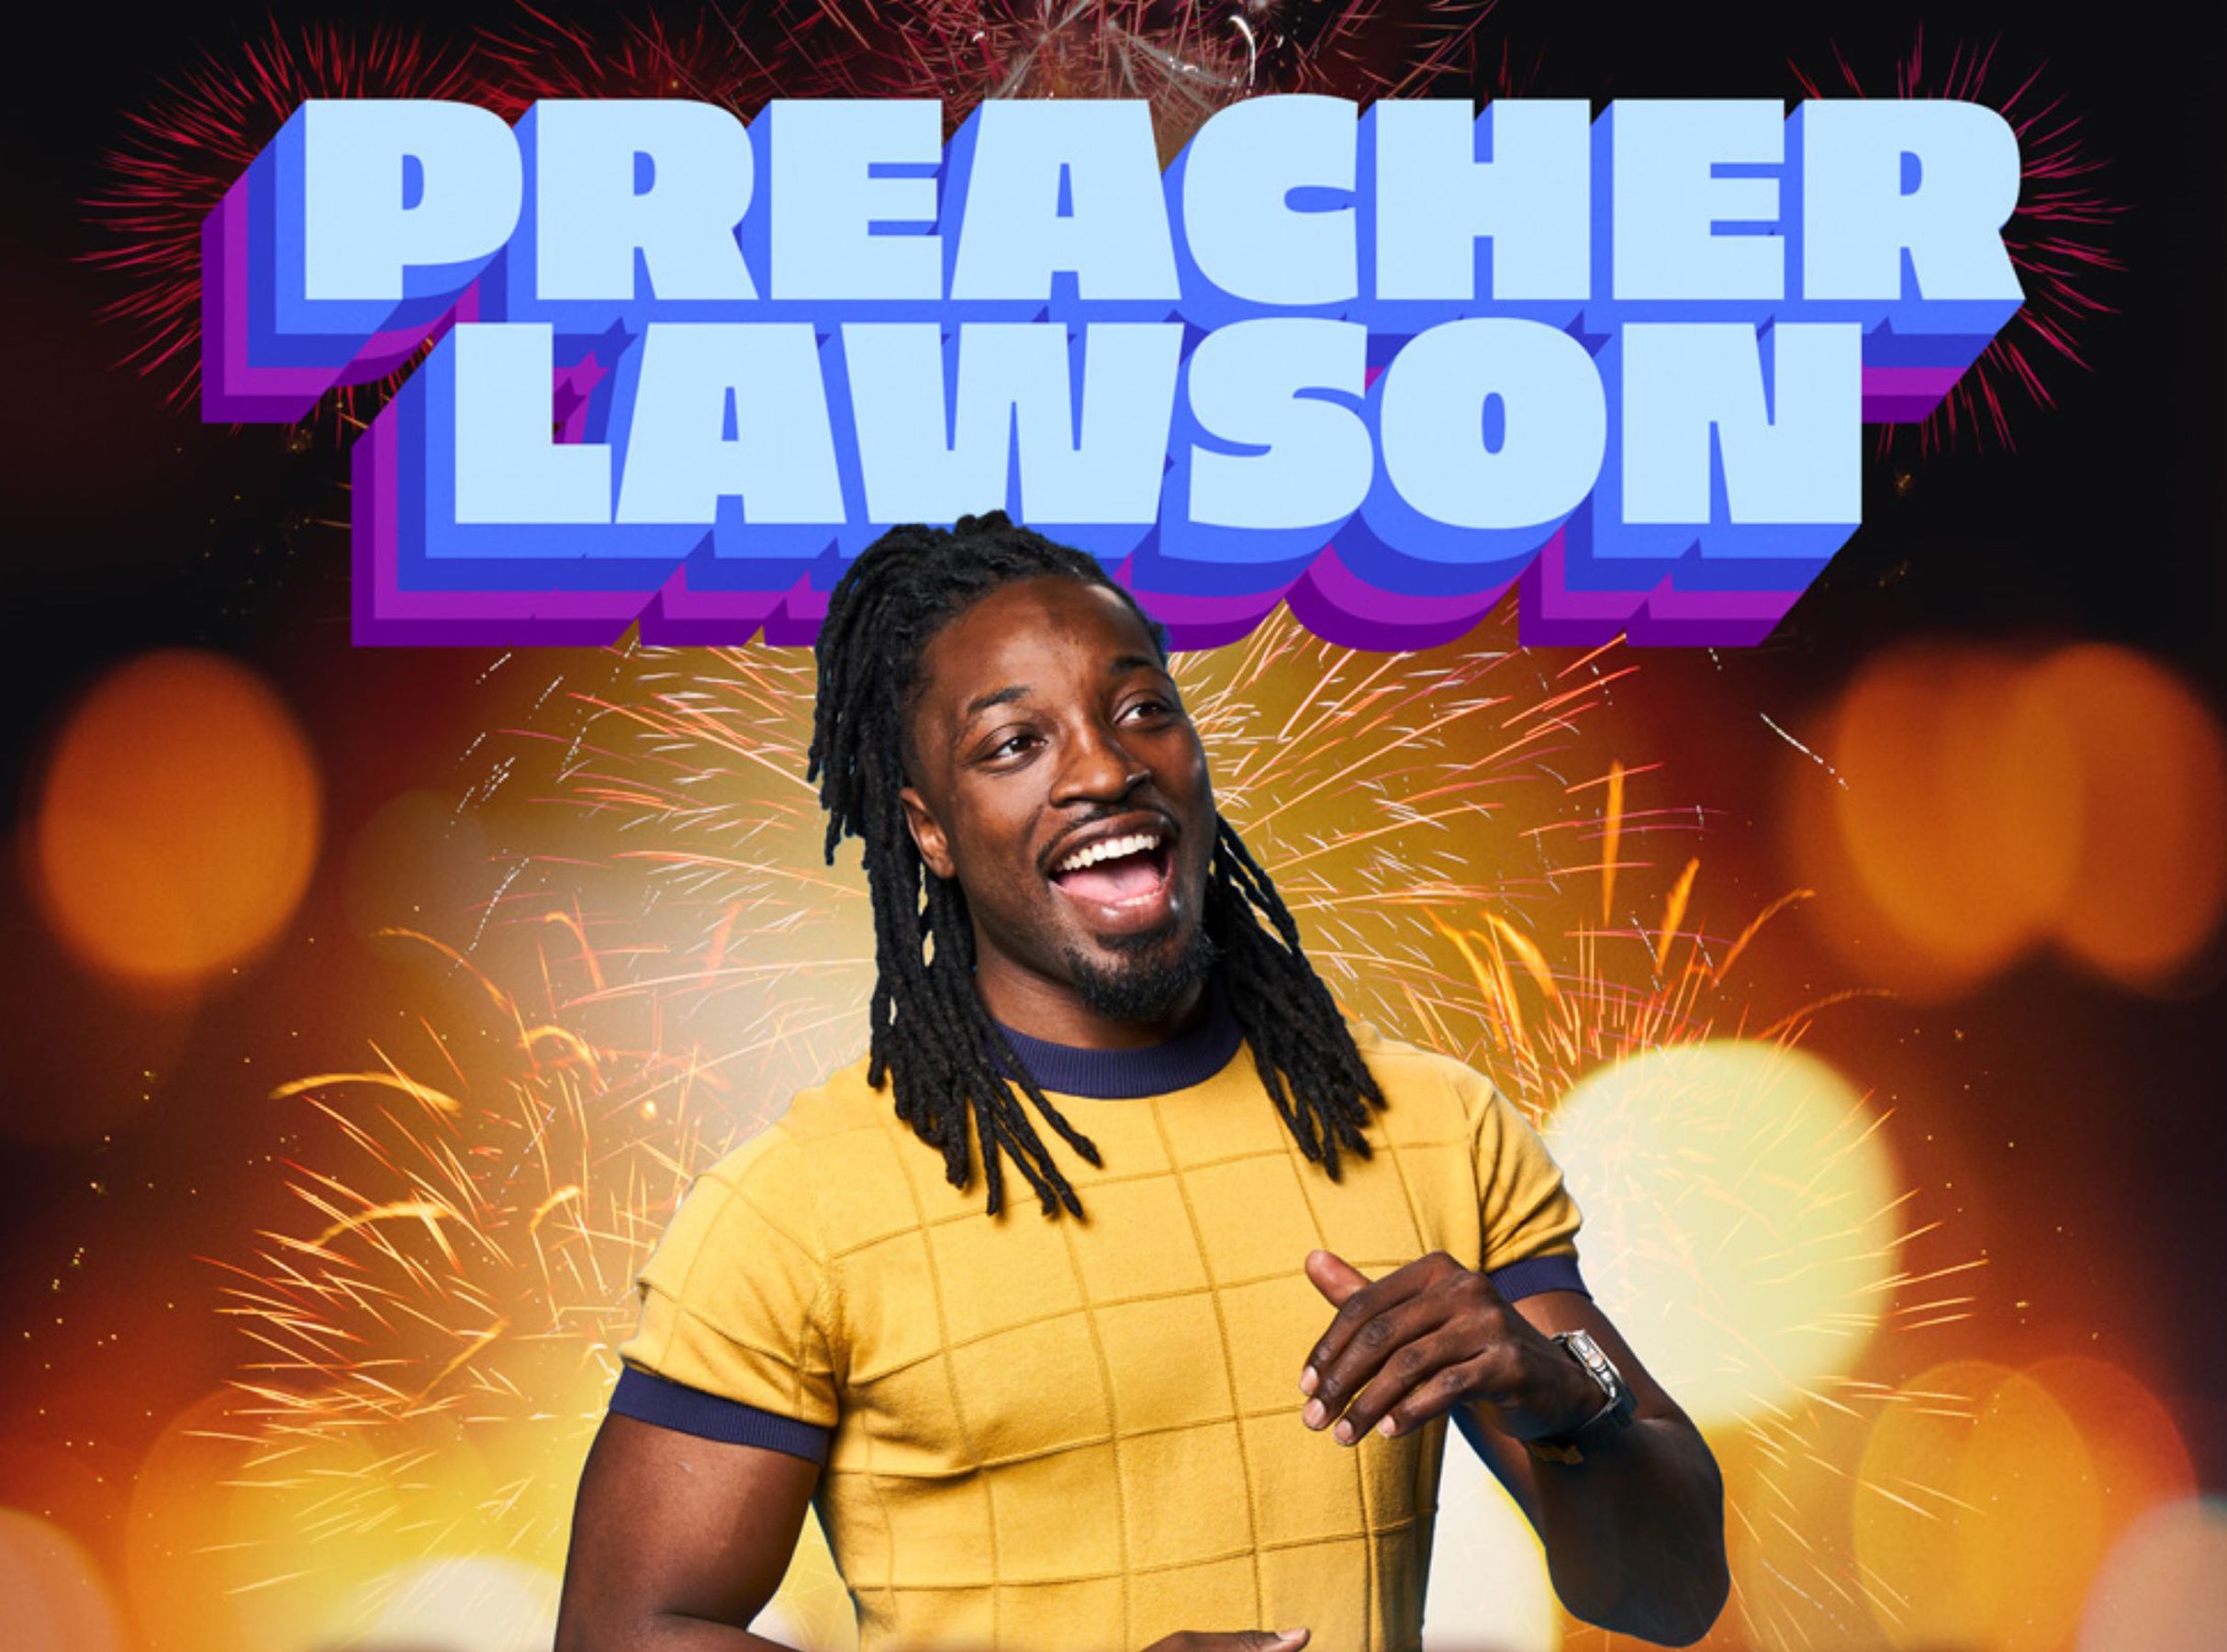 Preacher Lawson at Bing Crosby Theatre